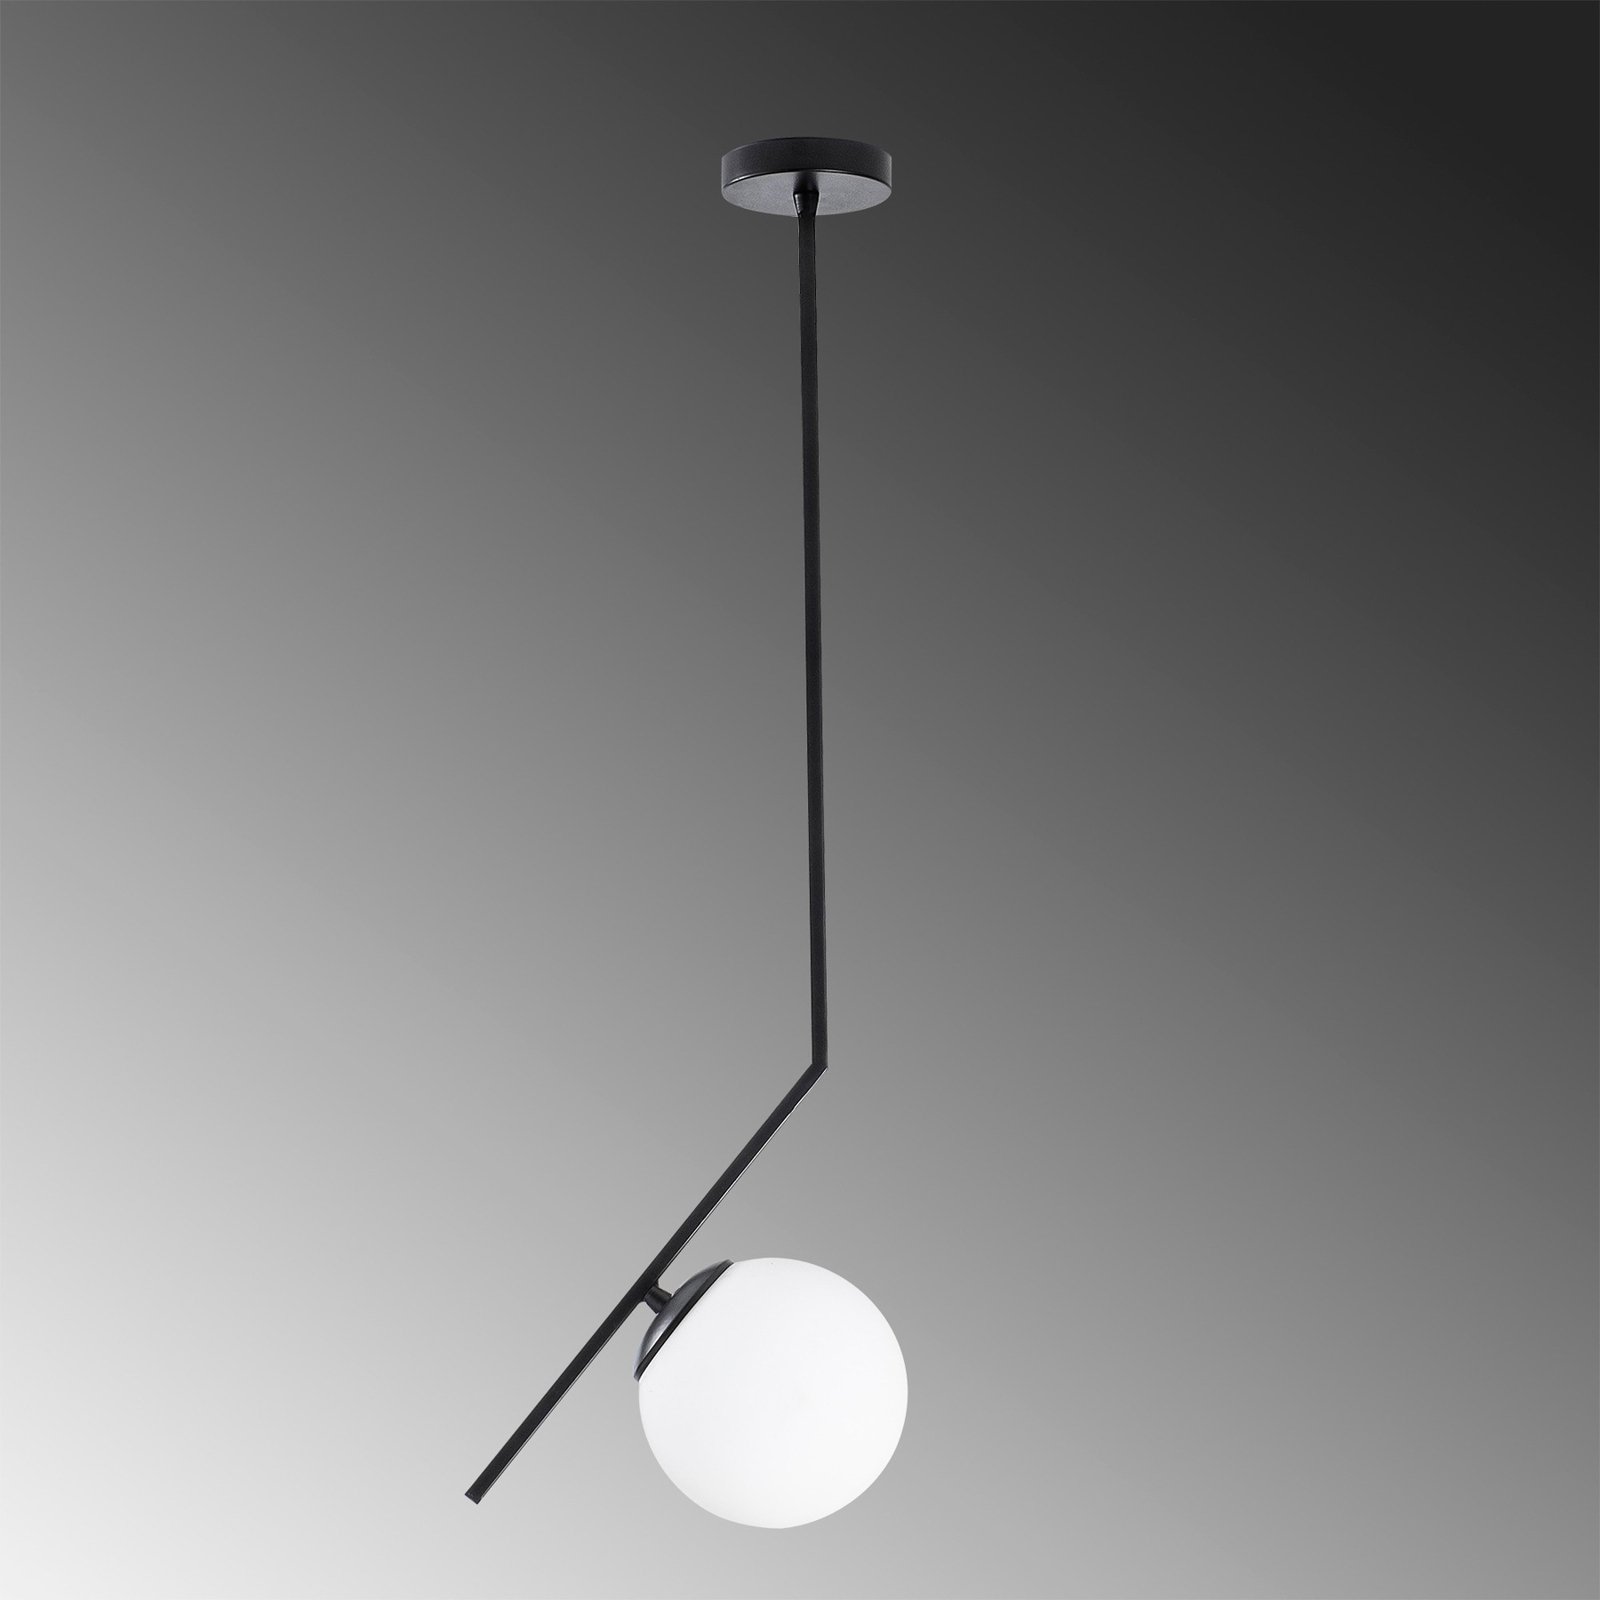 Dolunay 143-AV hanging light black glass lampshade